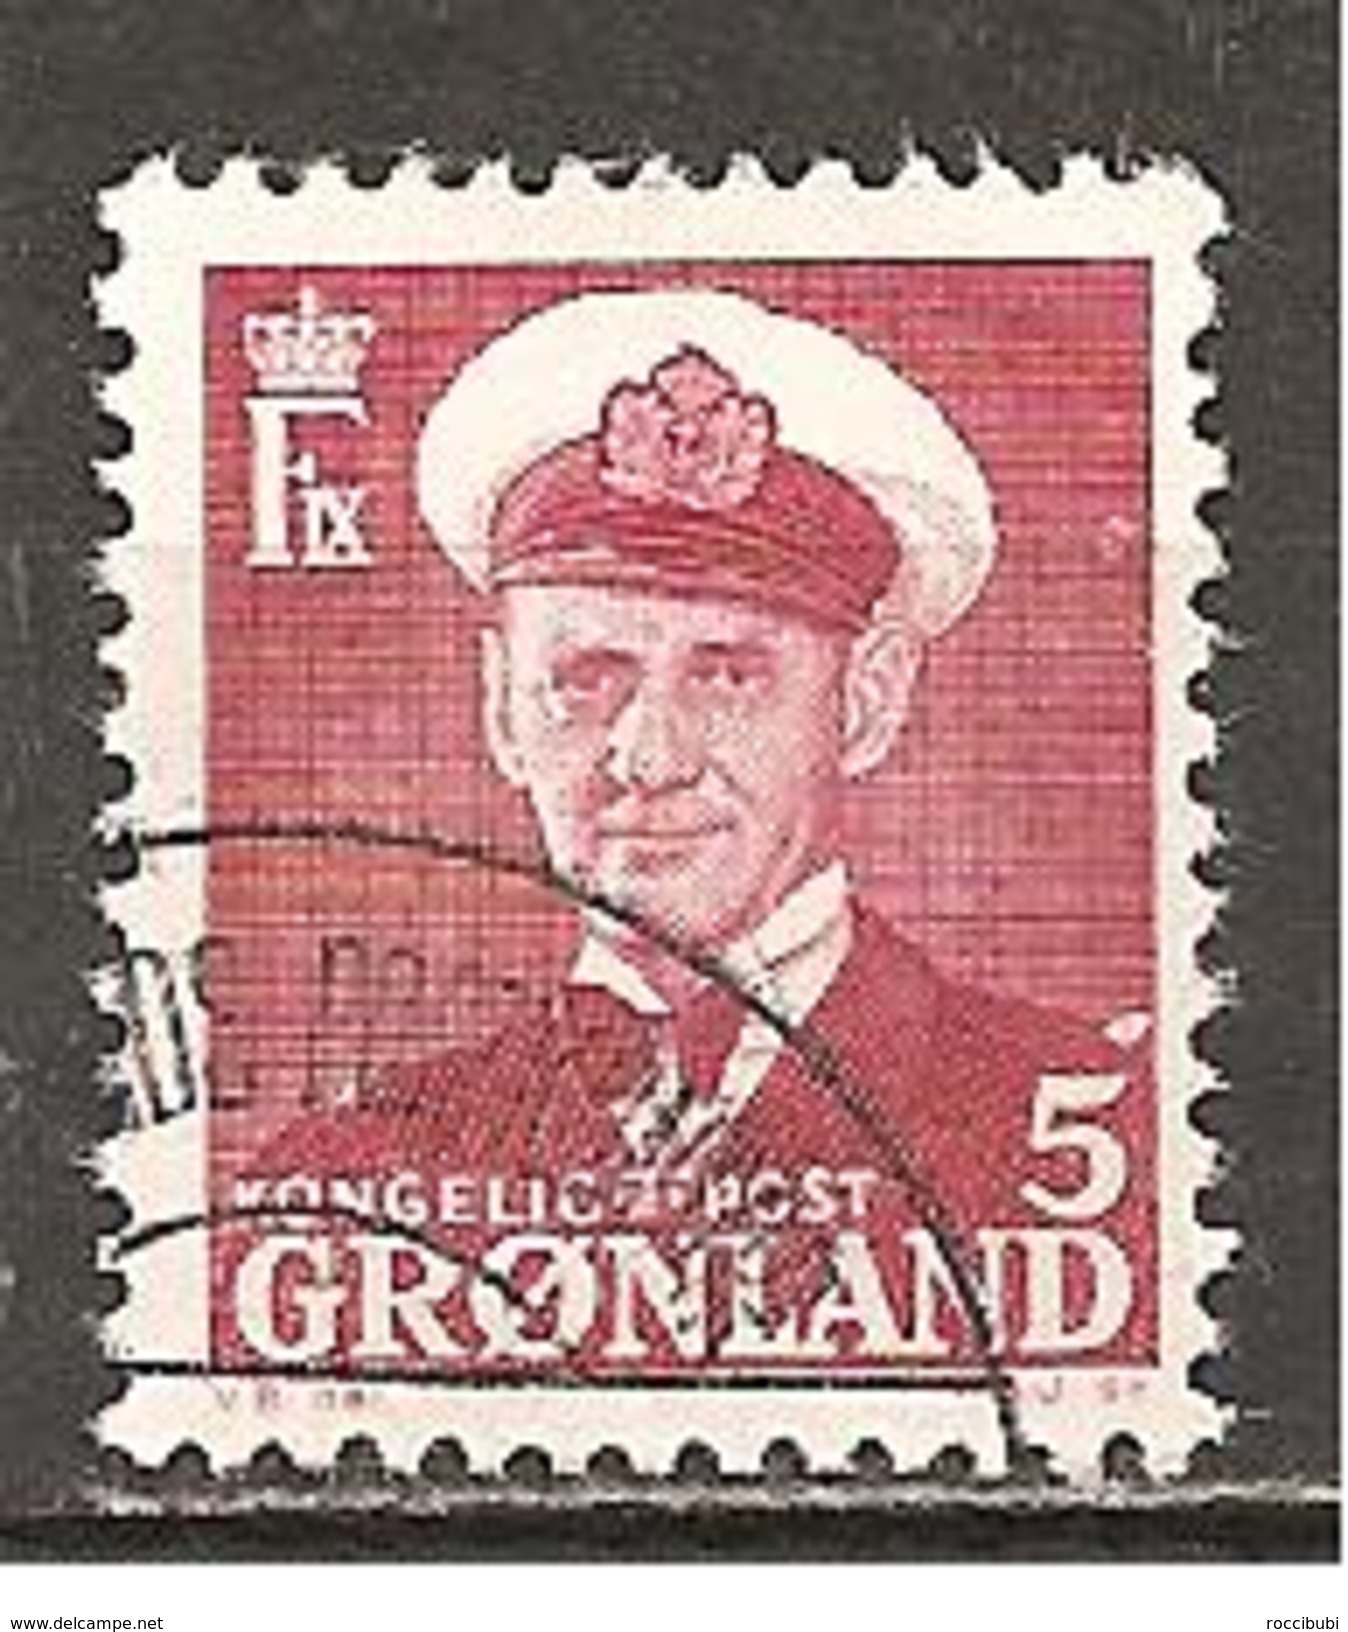 Grönland 1950 // Michel 29 O - Oblitérés